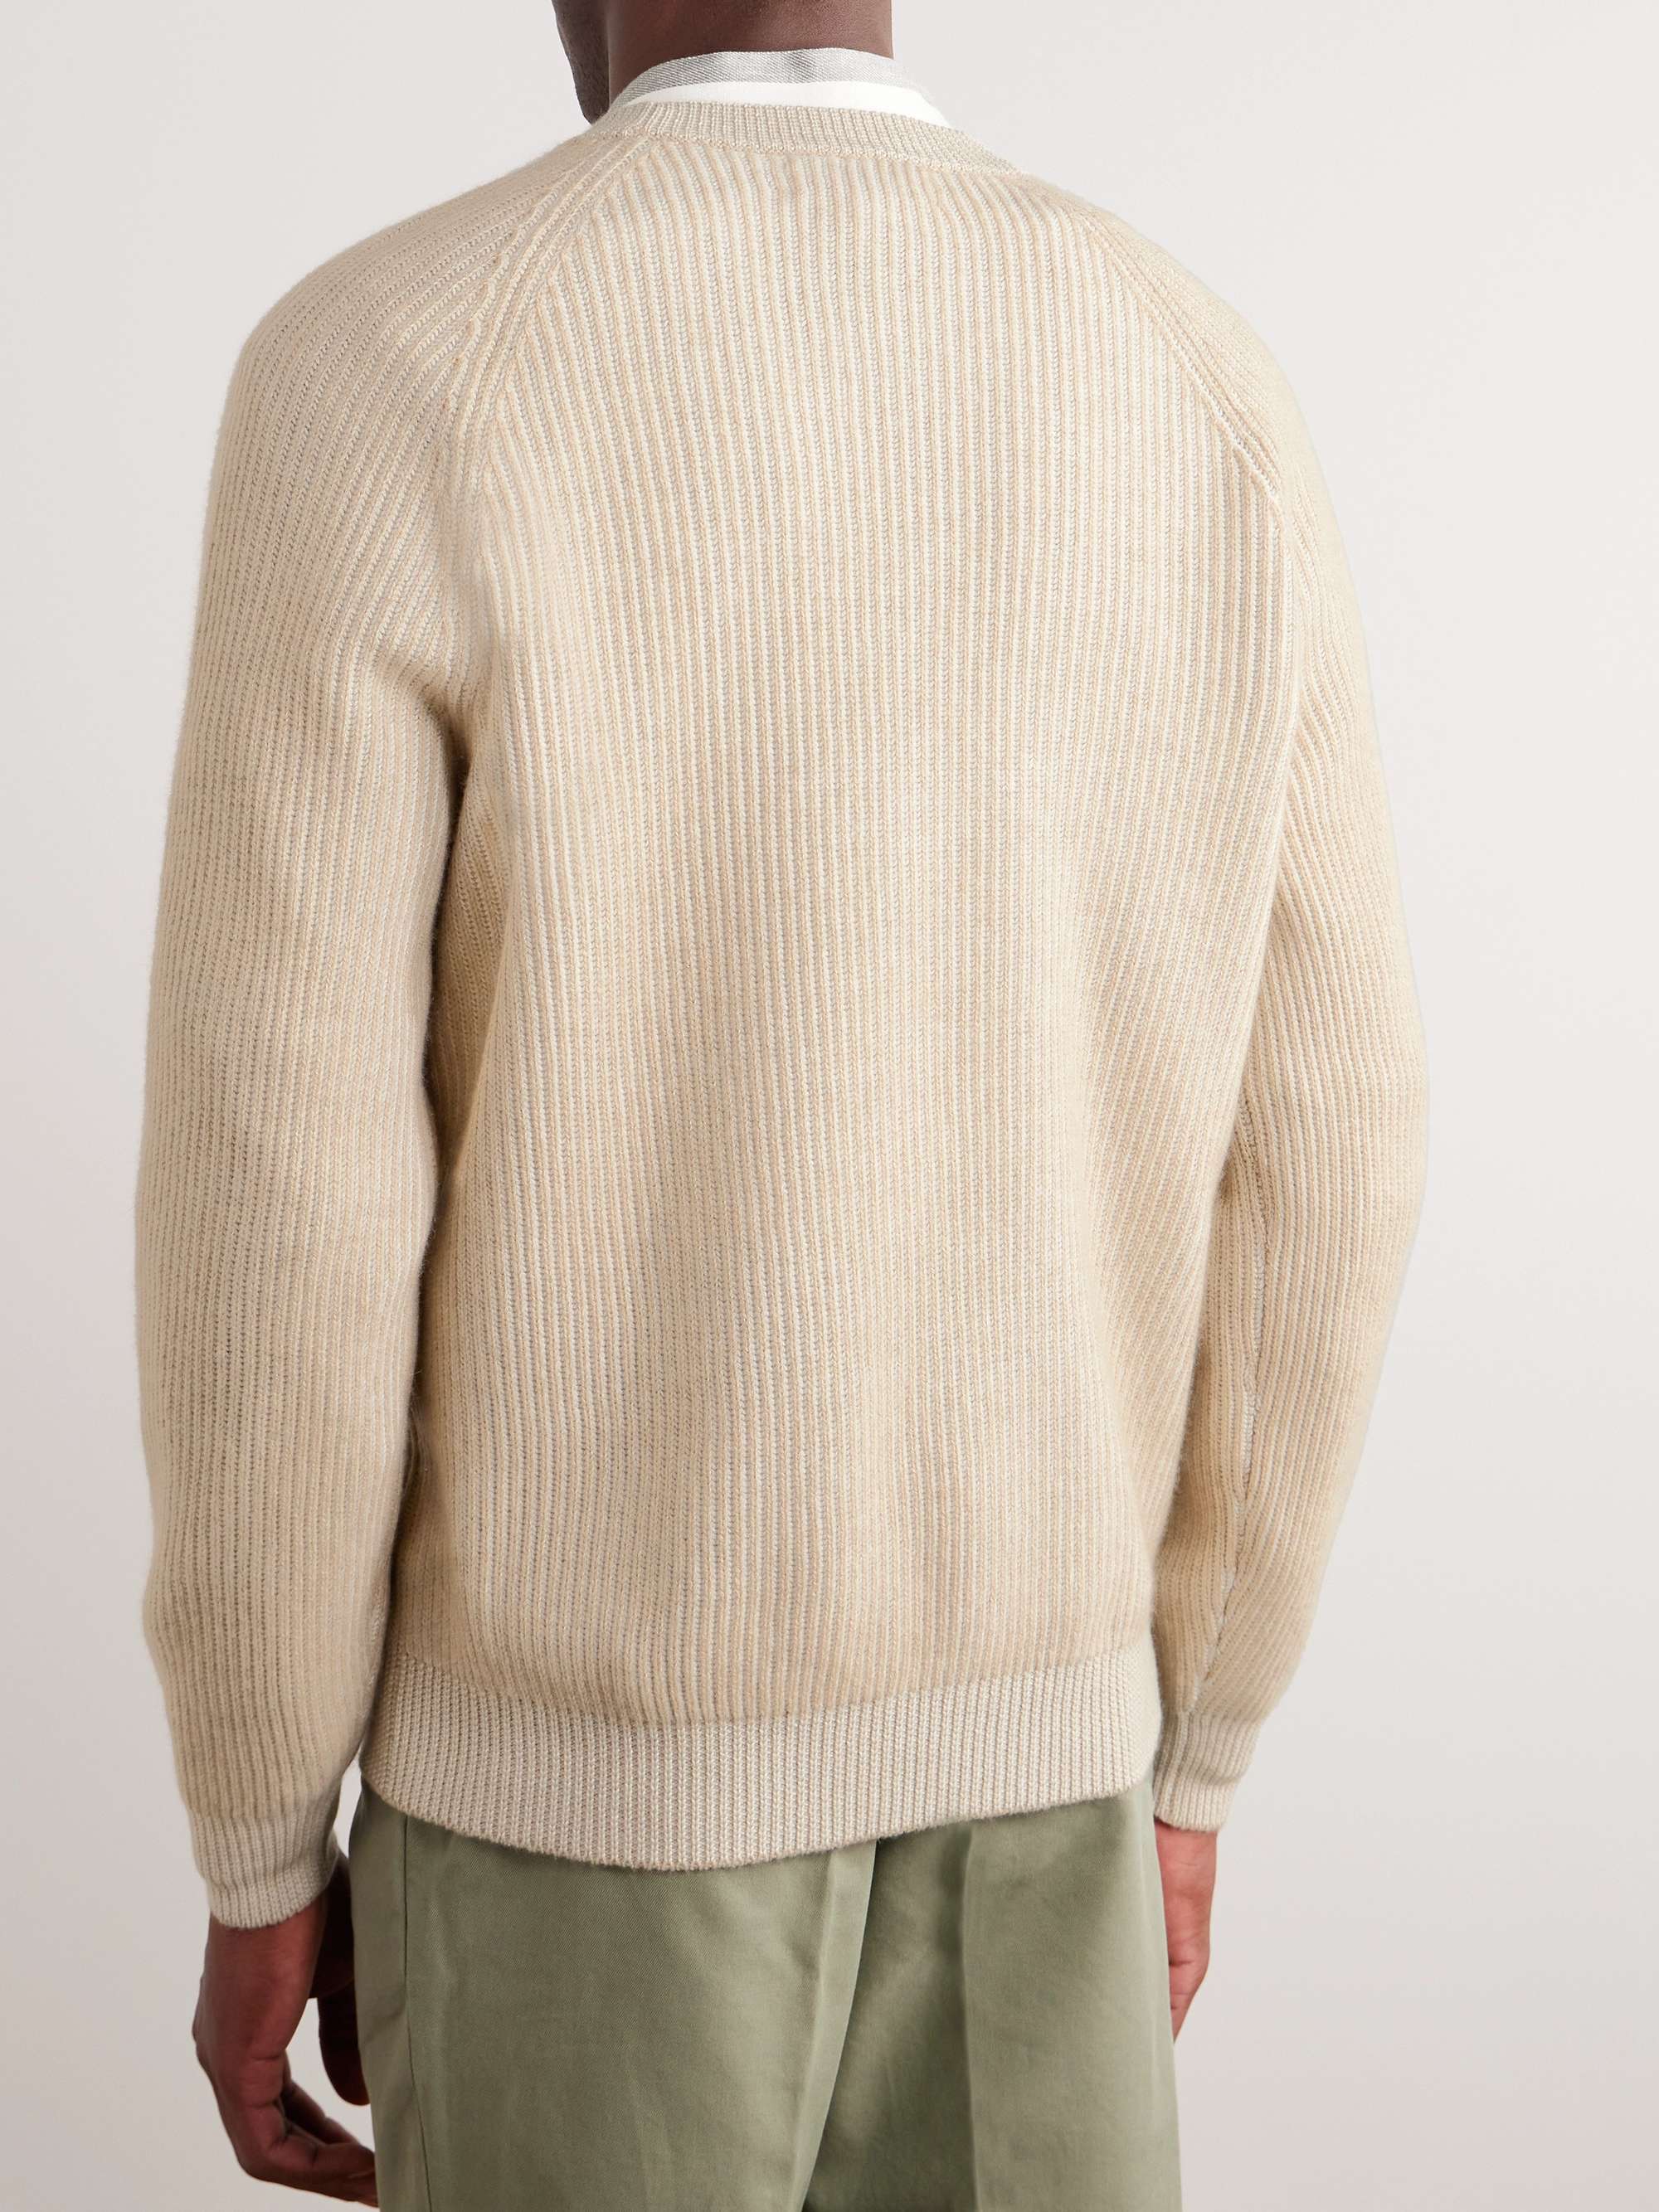 BRUNELLO CUCINELLI Ribbed Cashmere Sweater for Men | MR PORTER